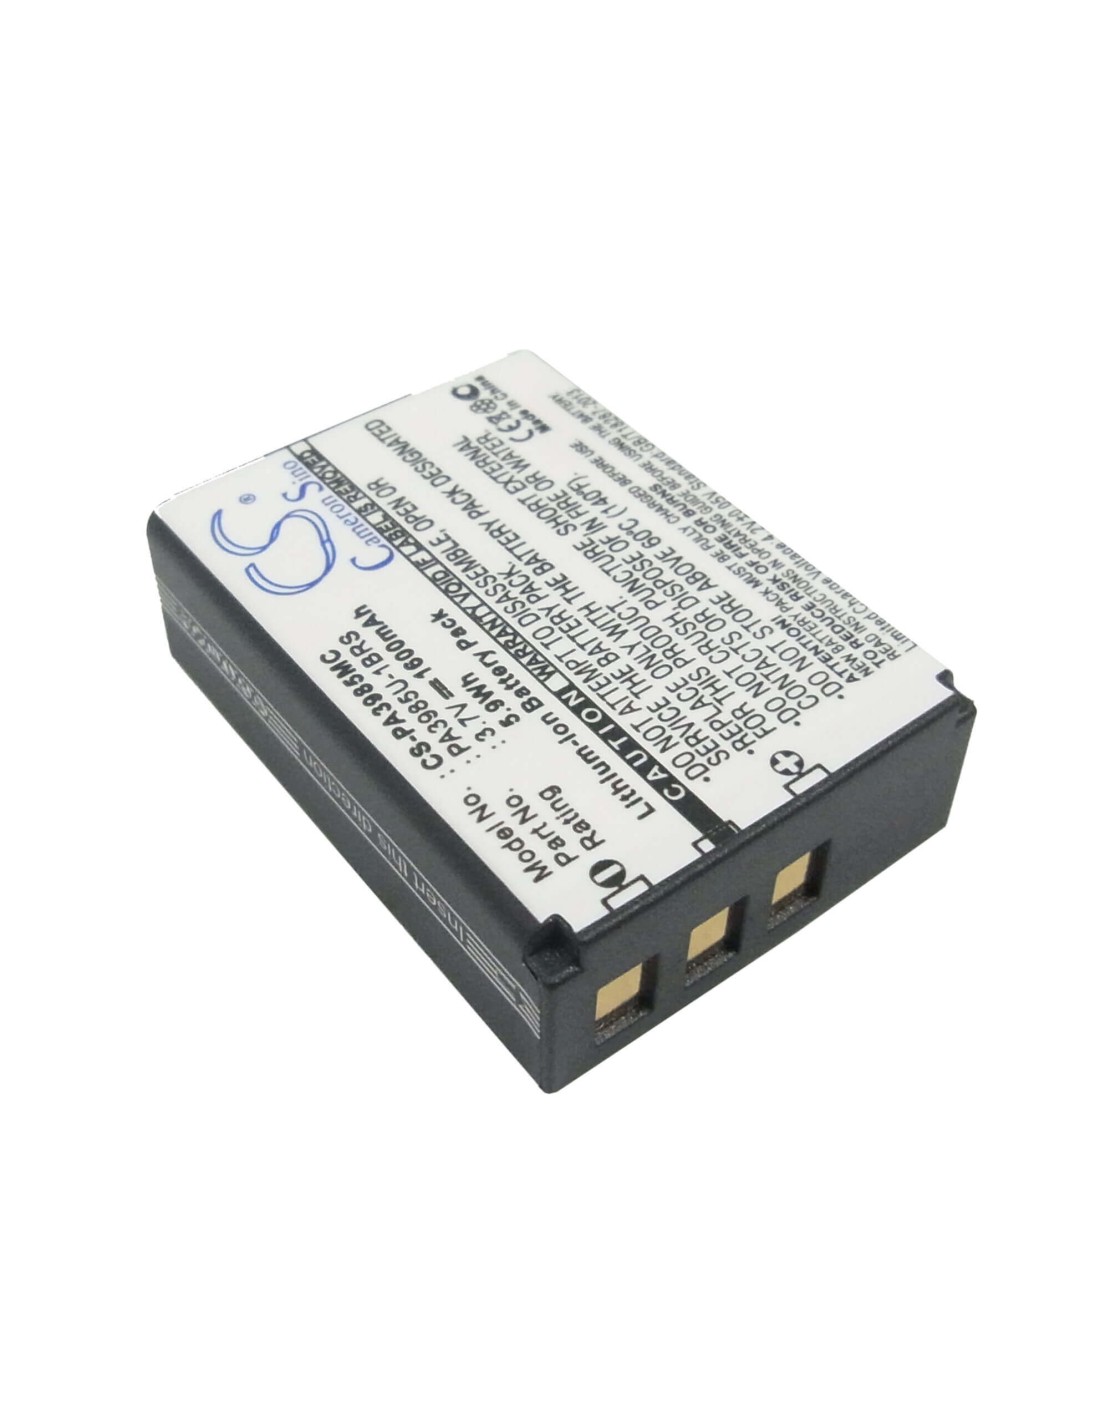 Battery for Toshiba Camileo X200, Camileo X400, 3.7V, 1600mAh - 5.92Wh